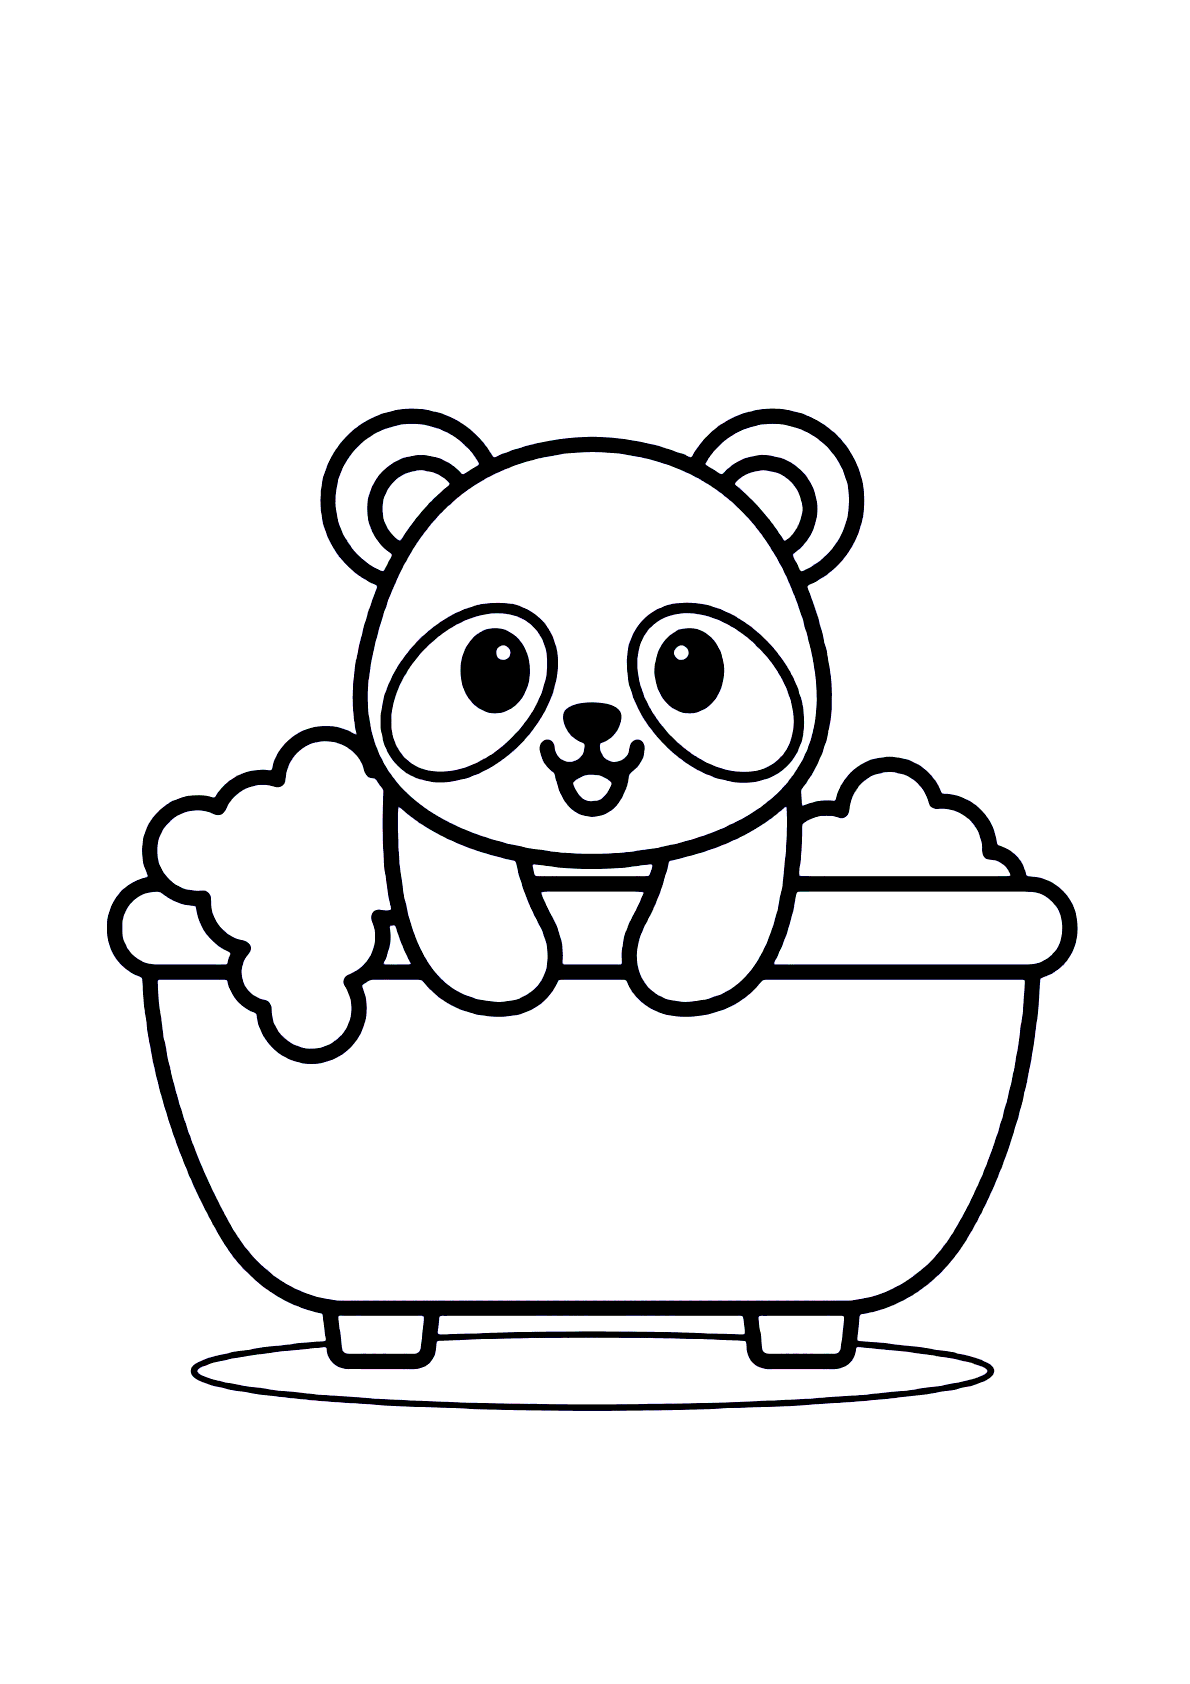 Desenho de Panda para colorir  Desenhos para colorir e imprimir gratis